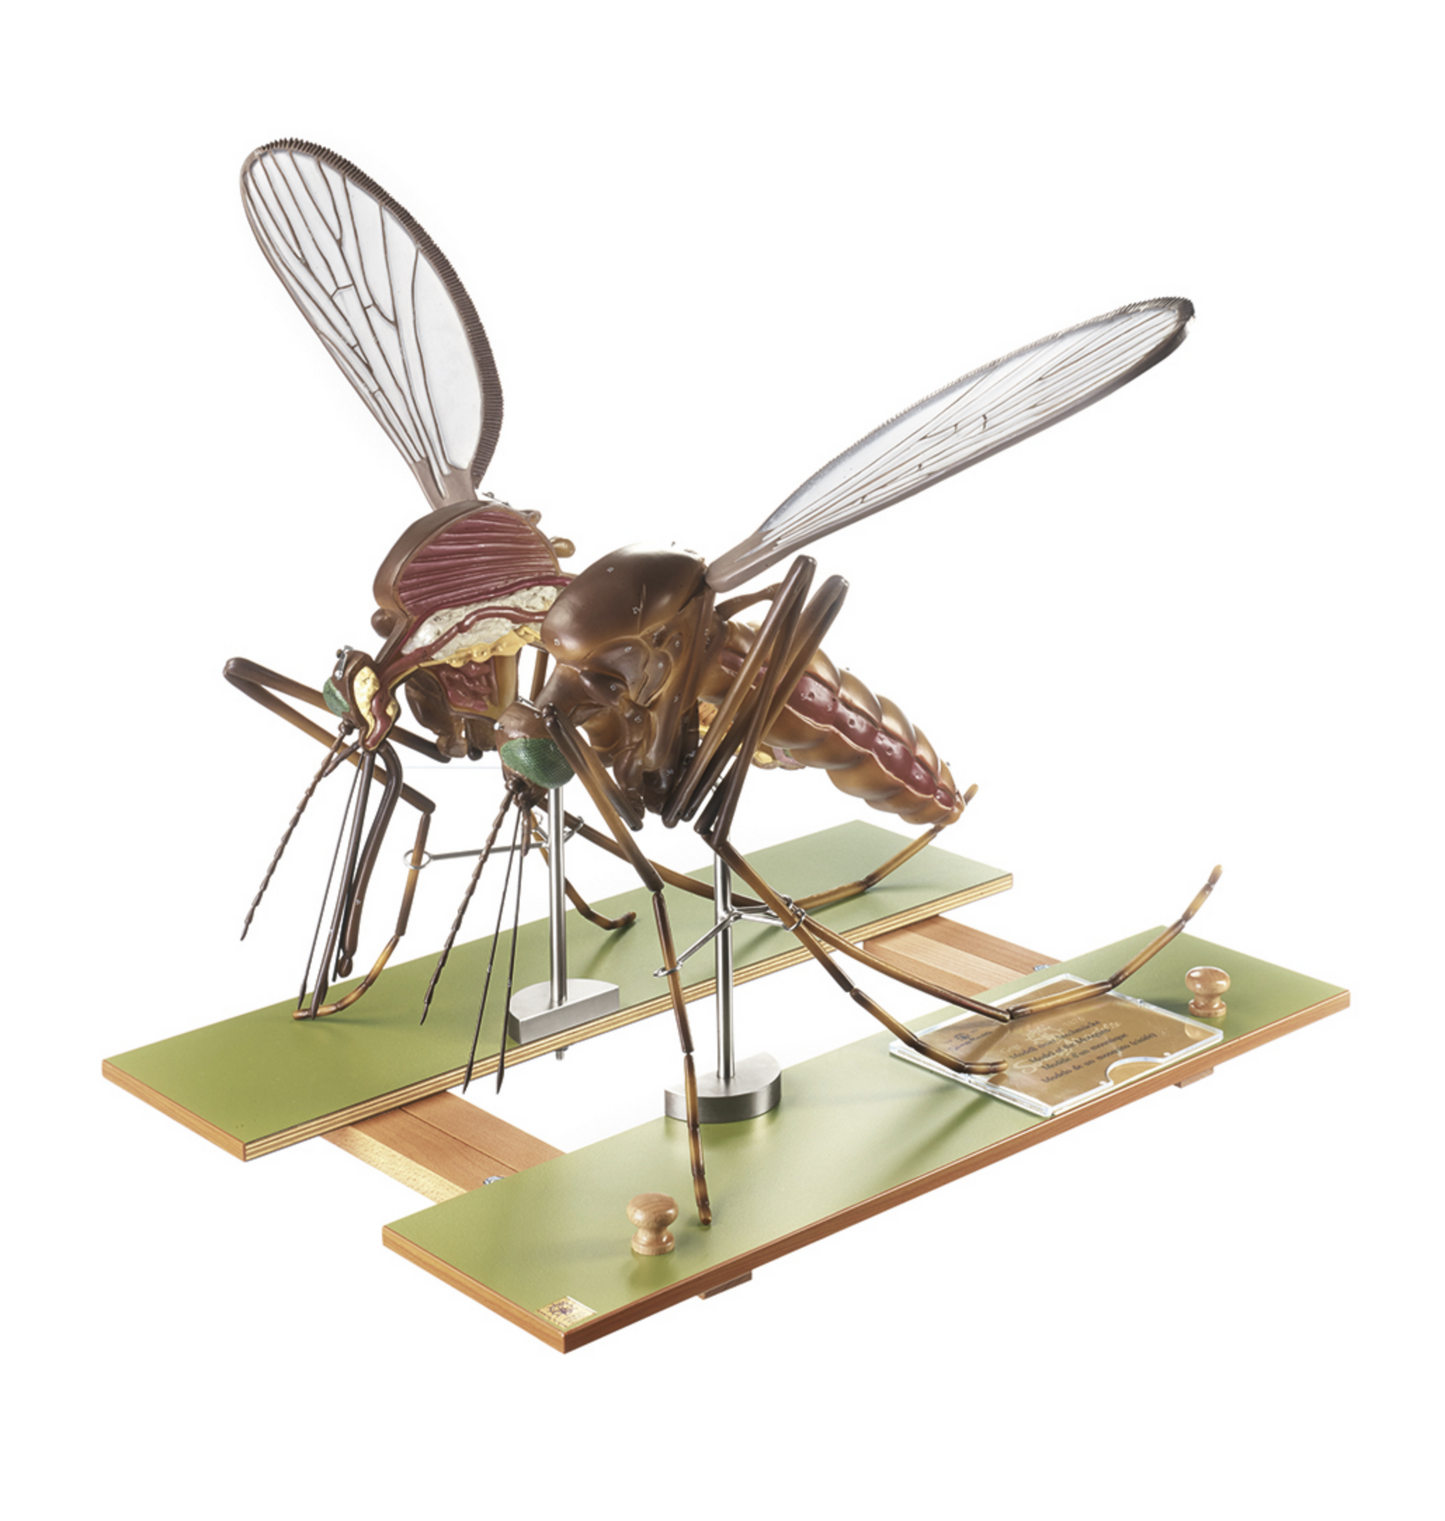 Modell av en mygga (Culex pipiens) i högsta kvalitet och kraftigt förstorad. Kan delas upp i 7 delar